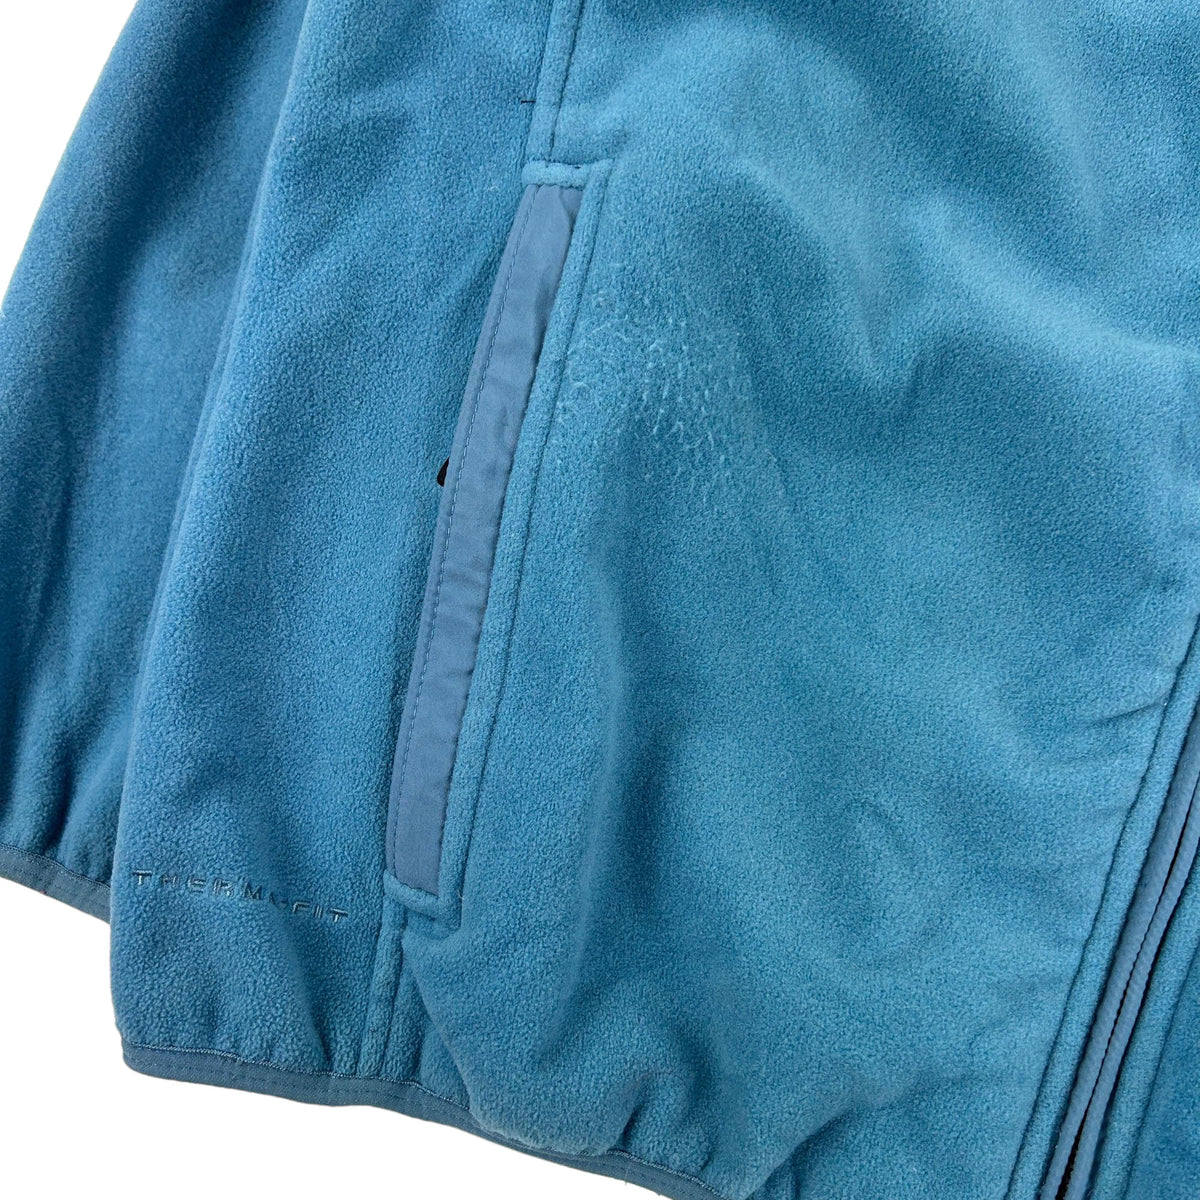 Vintage Nike ACG Fleece Jacket Size XL